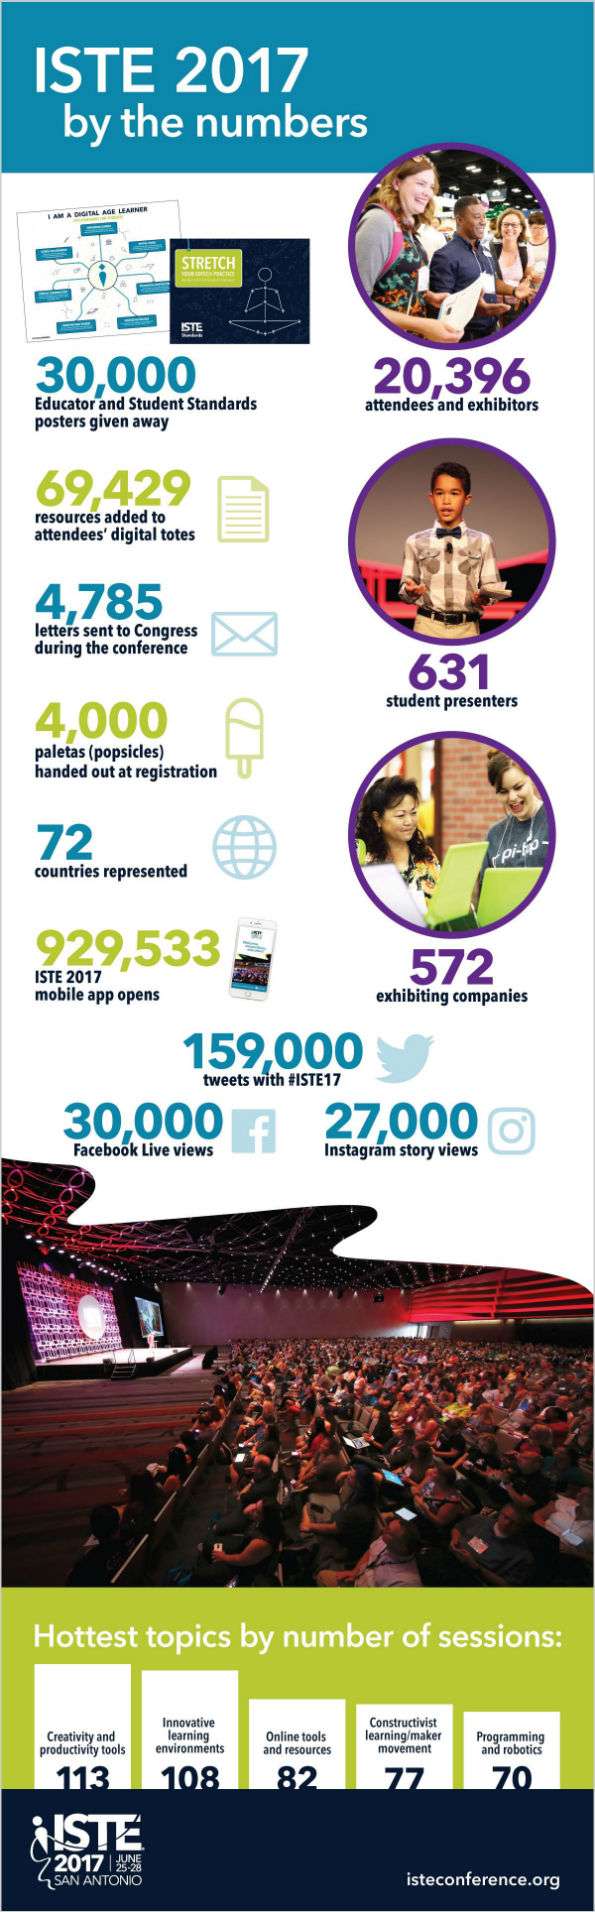 ISTE 2017 infographic 